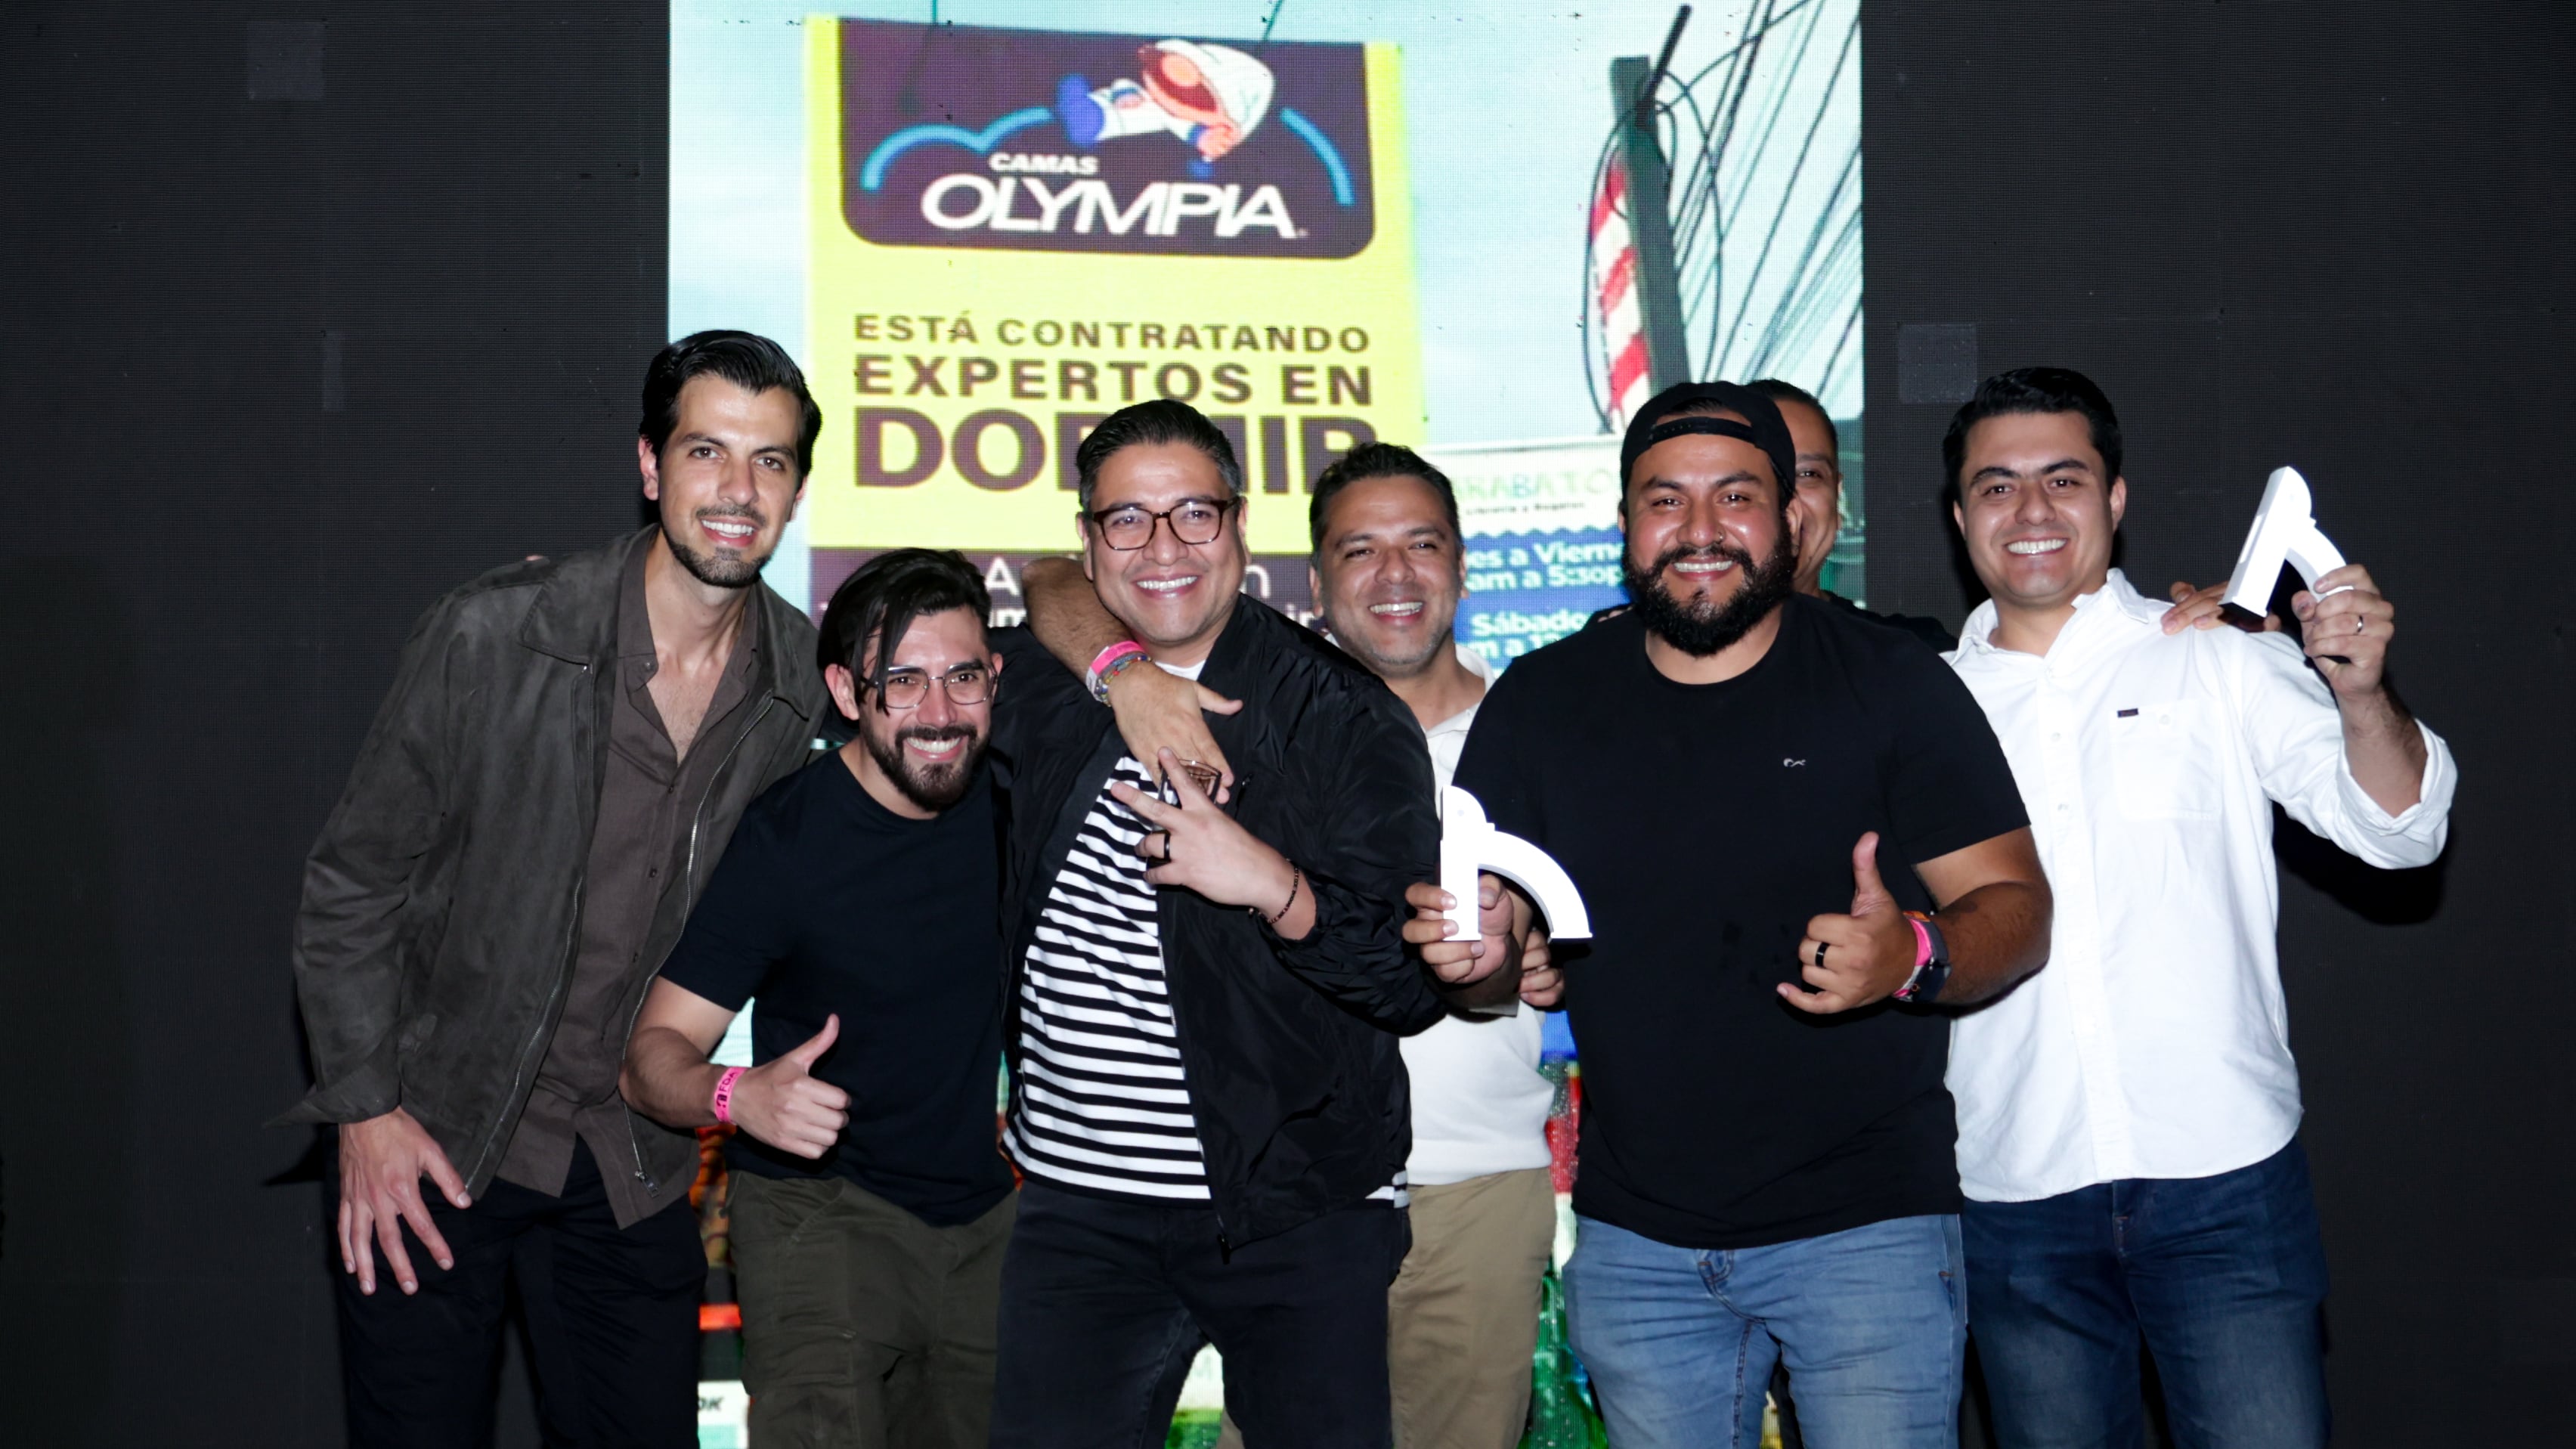 Festival de Antigua premia a las 10 mejores campañas creativas de Guatemala